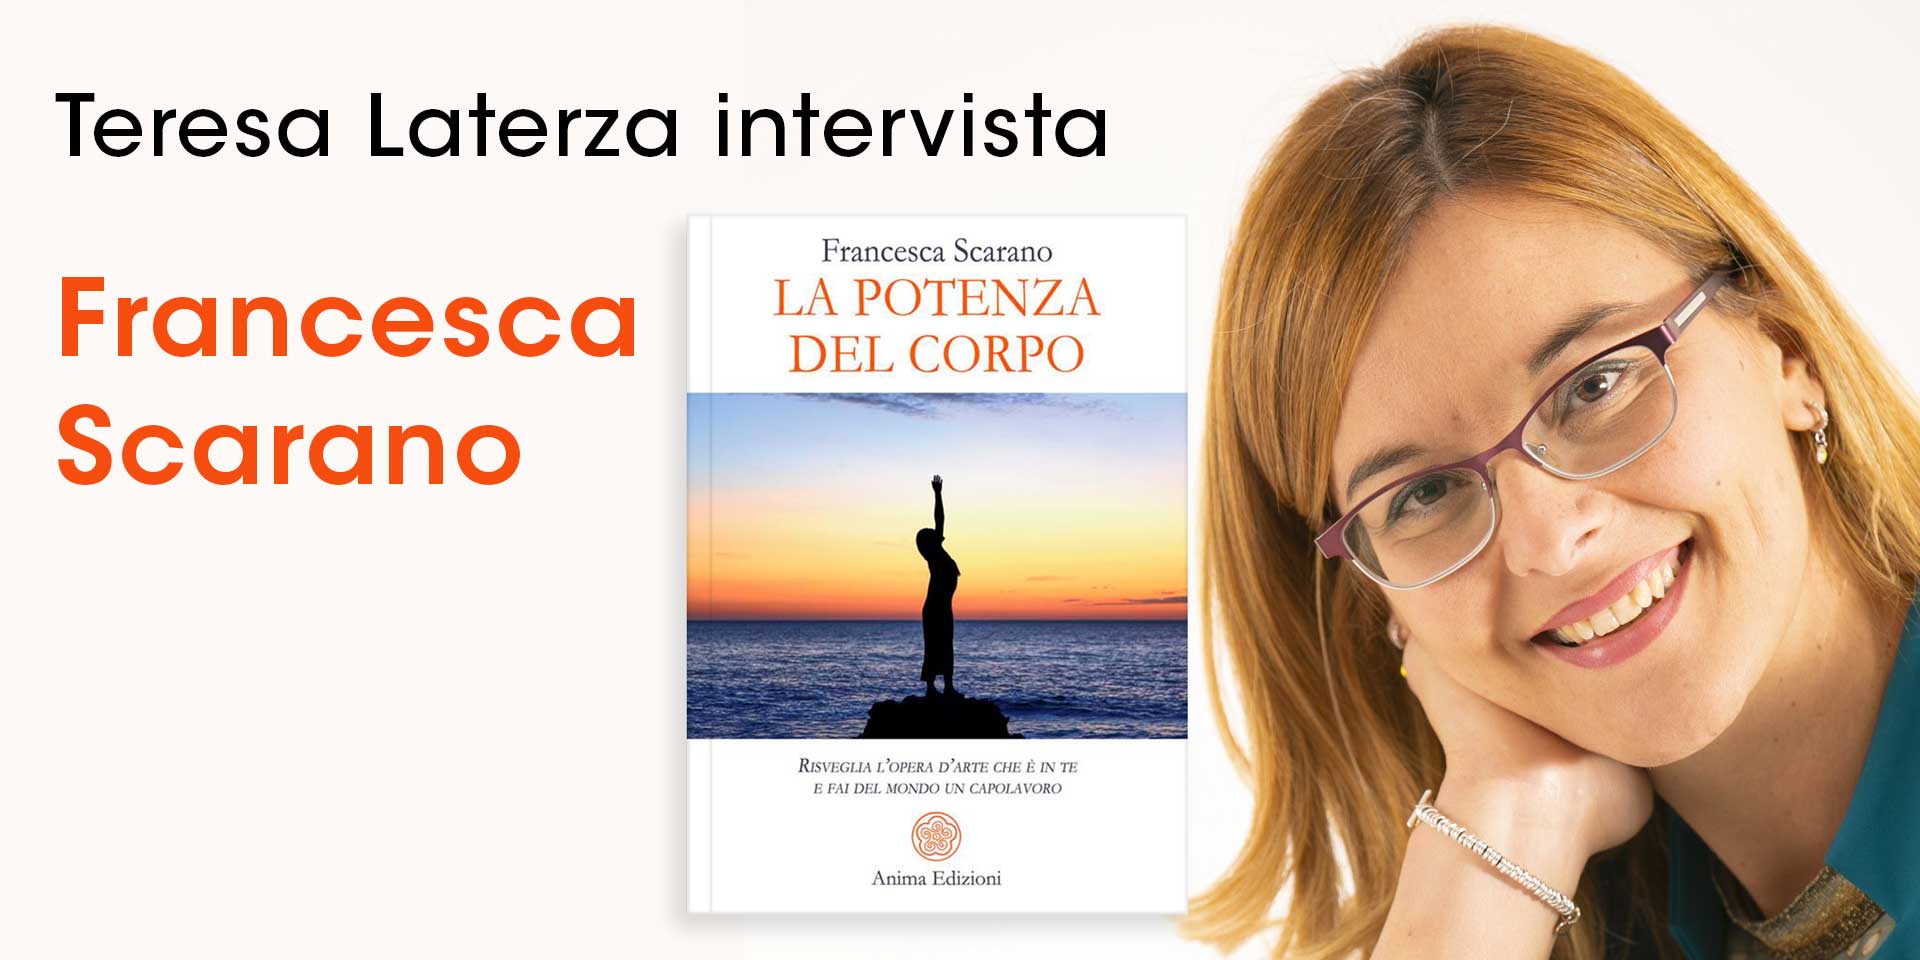 Francesca Scarano – Fare del mondo un capolavoro